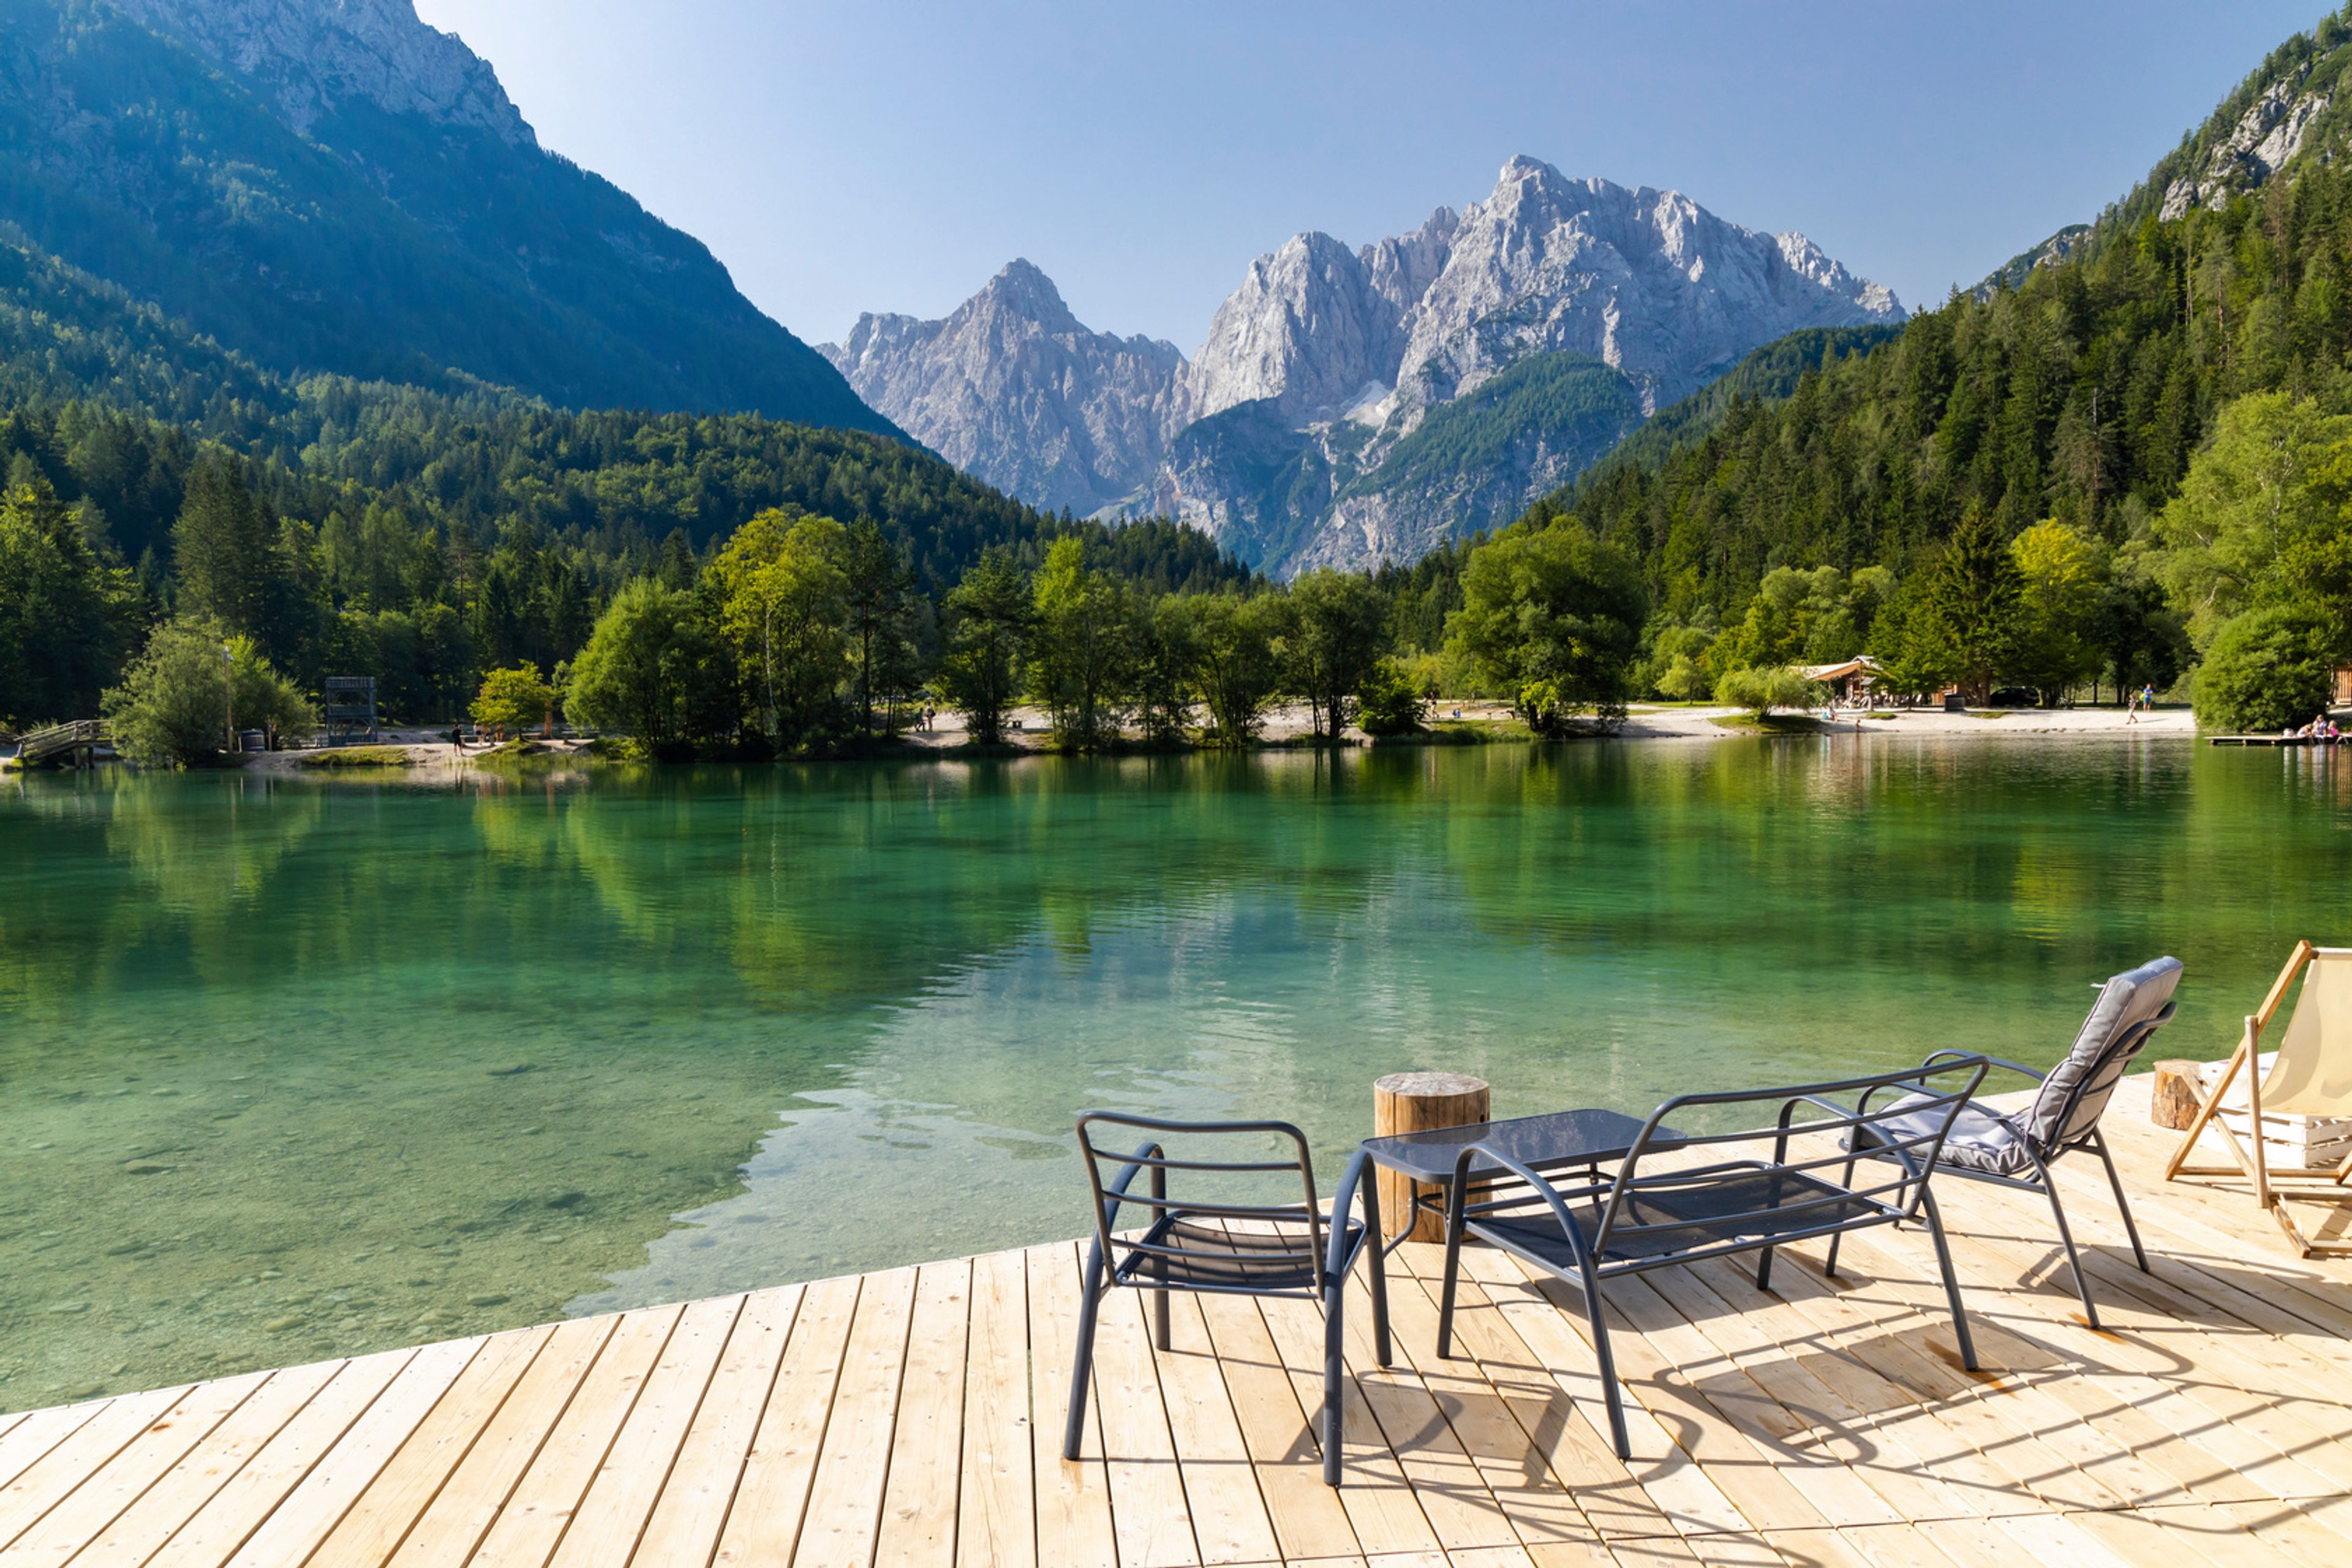 Lago e montagne vicino al villaggio di Kranjska Gora, nel parco nazionale del Triglav, Slovenia